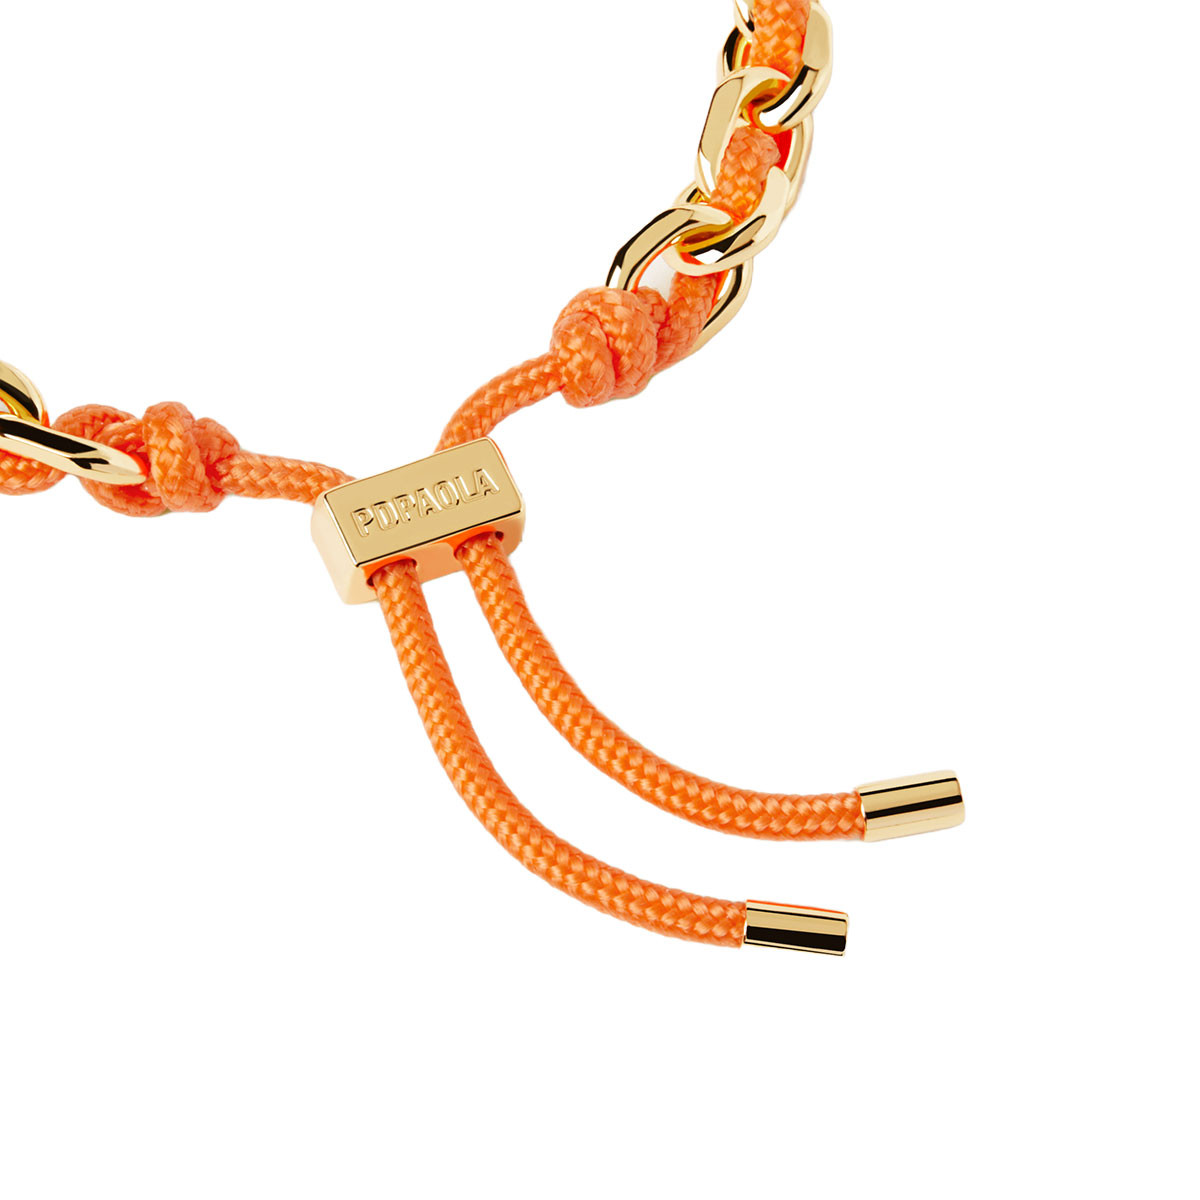 PDPAOLA Bracelet chaîne et cordon en argent plaqué or - Tangerine - PU01-686-U